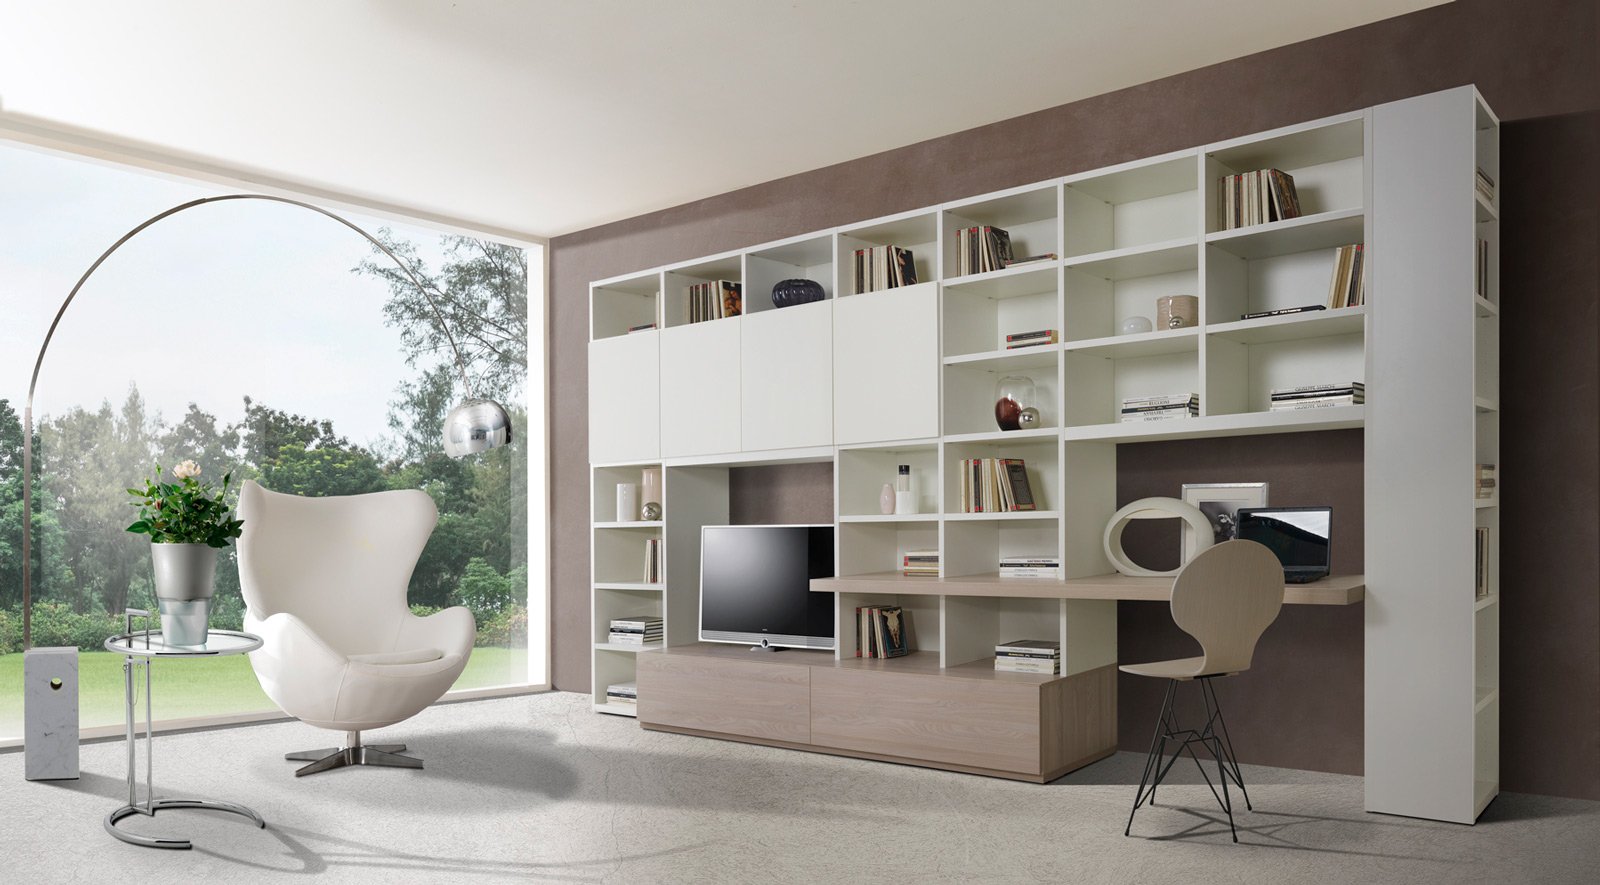 Angolo studio in soggiorno integrato nella libreria o in for Soggiorni moderni ad angolo